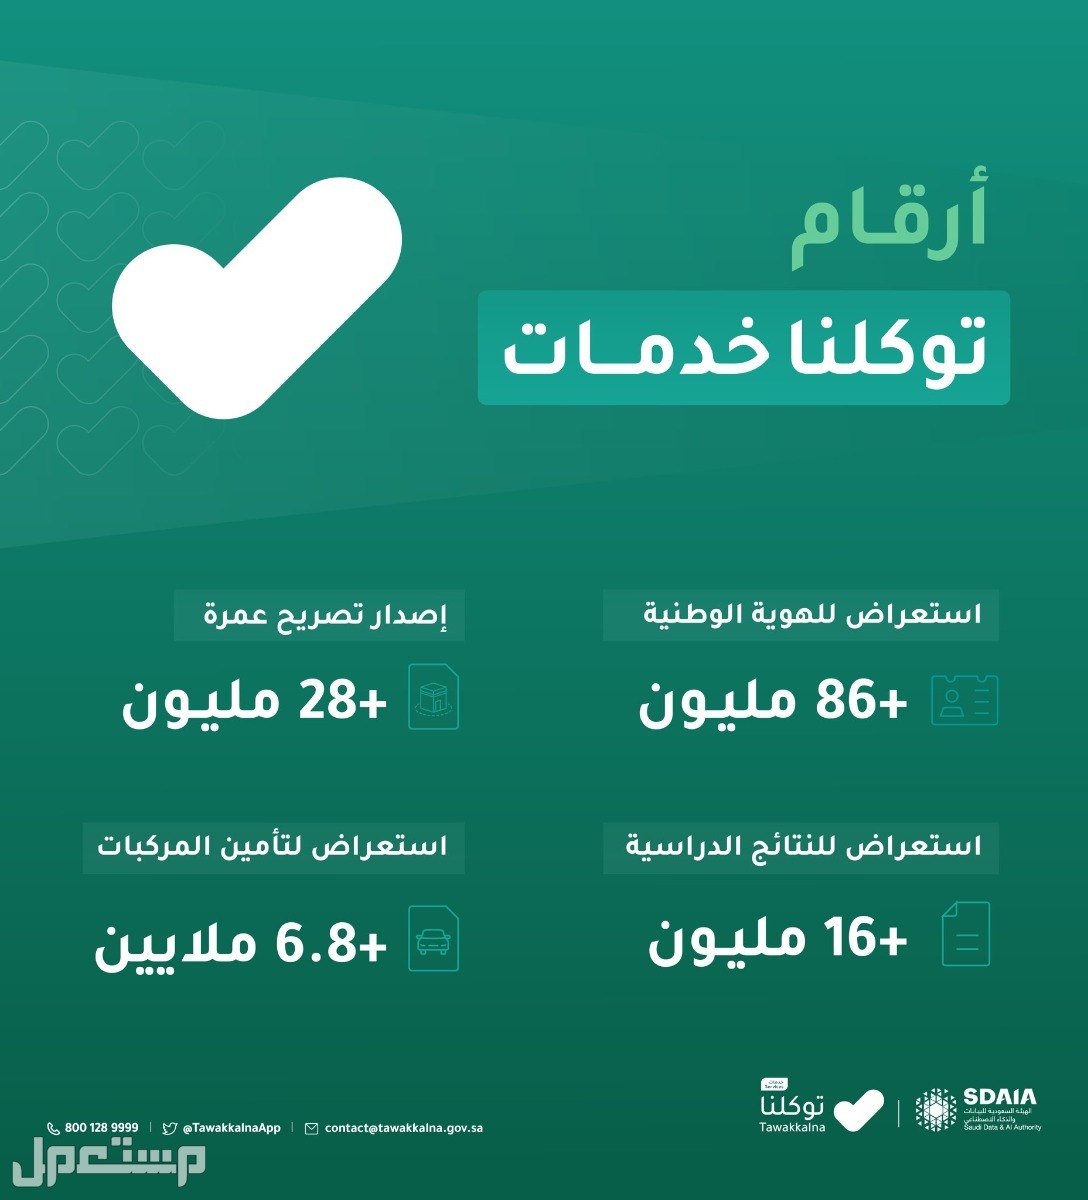 خطوات استعراض إعدادات الحساب في توكلنا خدمات في السعودية أرقام توكلنا